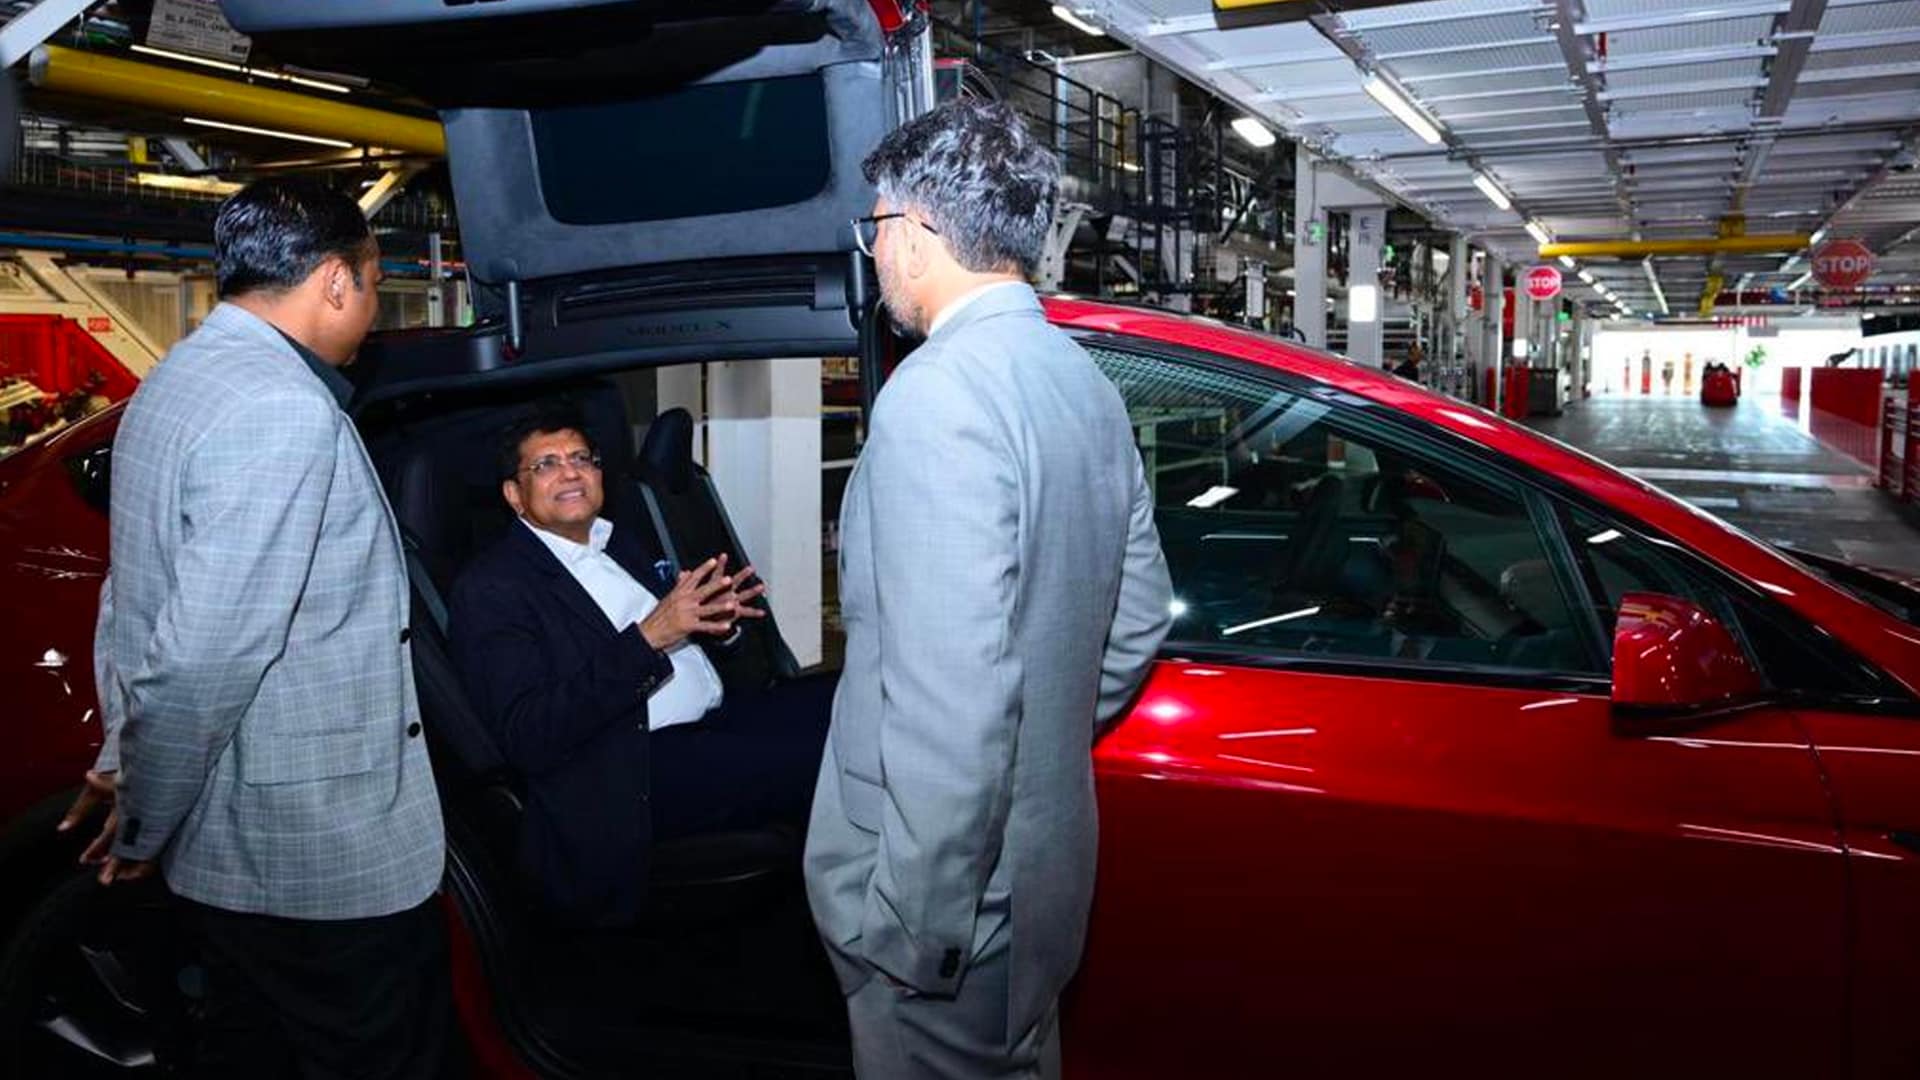 پیوش گویال طی بازدید از کارخانه خودروهای برقی ایلان ماسک اعلام کرد تسلا واردات از هند را دو برابر می کند.